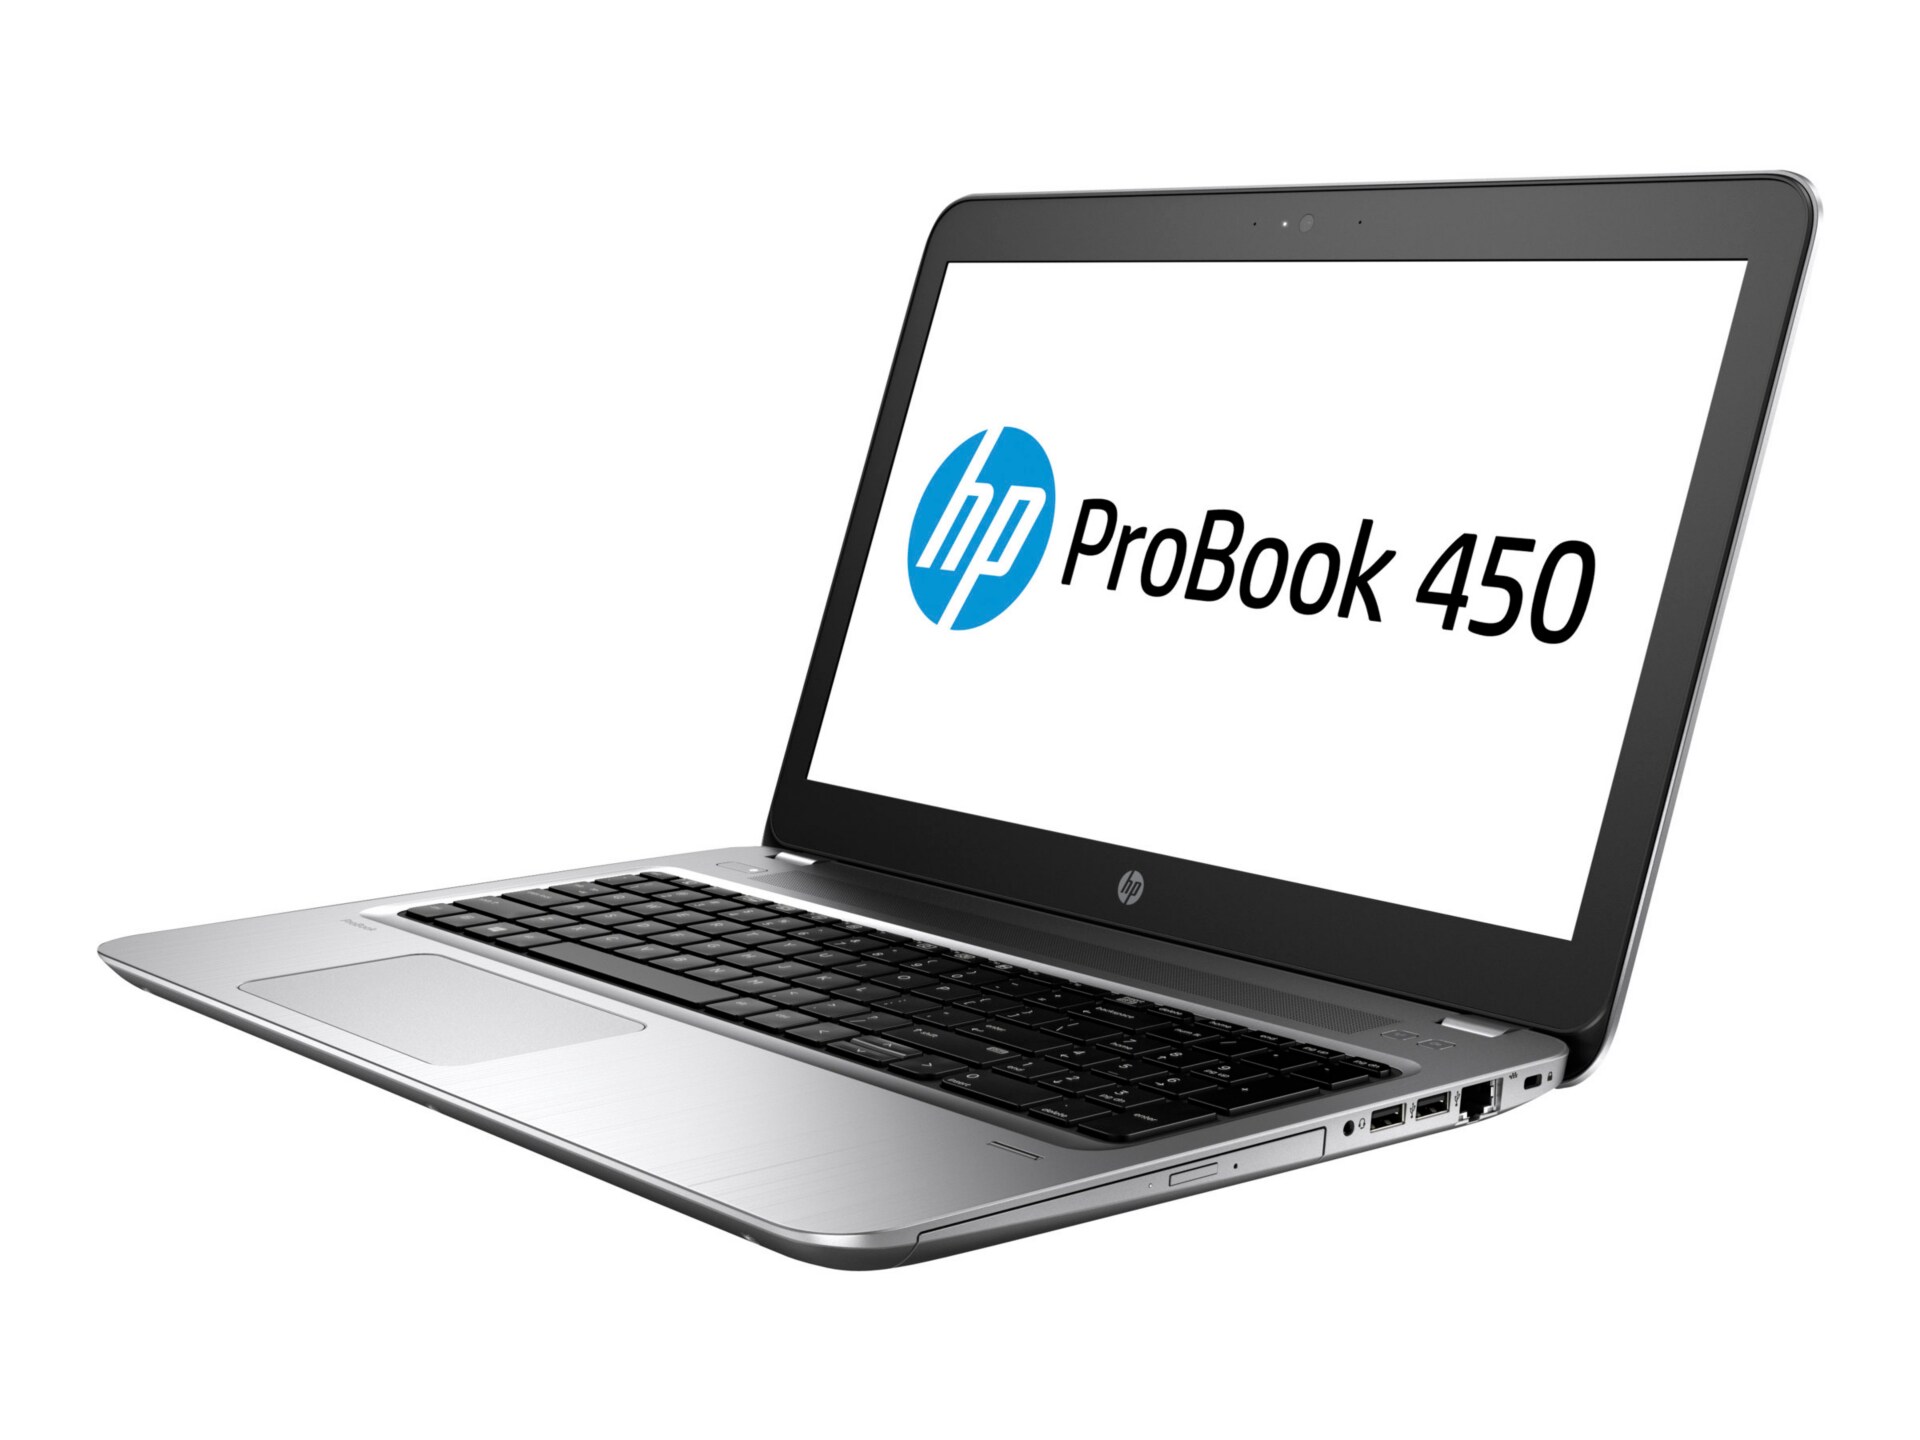 HP ProBook 450 G4 - 15.6" - Core i7 7500U - 8 GB RAM - 500 GB HDD - US